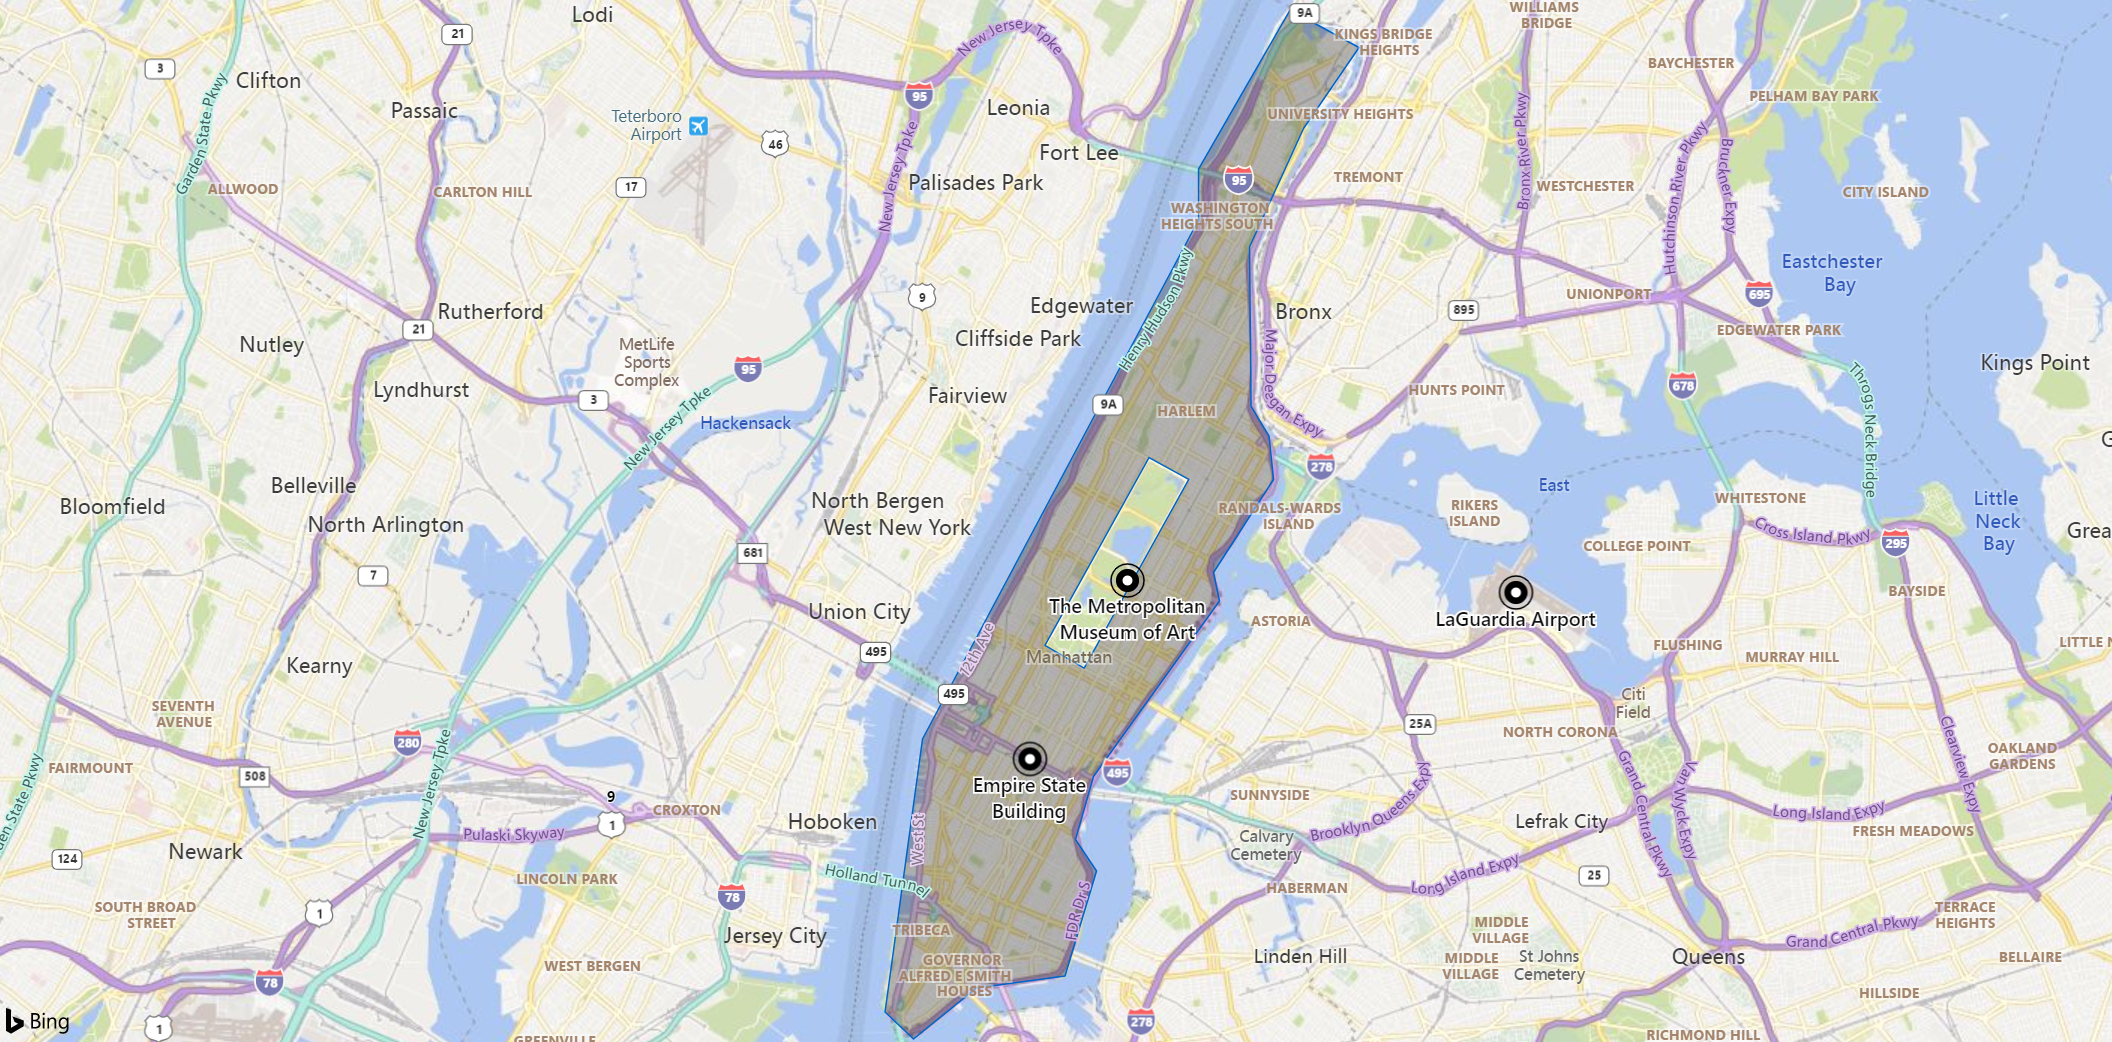 Snímek obrazovky s mapou oblasti Manhattan se značkami pro orientační bod, muzeum a letiště Ostrov se zobrazuje šedě s výjimkou Centrálního parku.